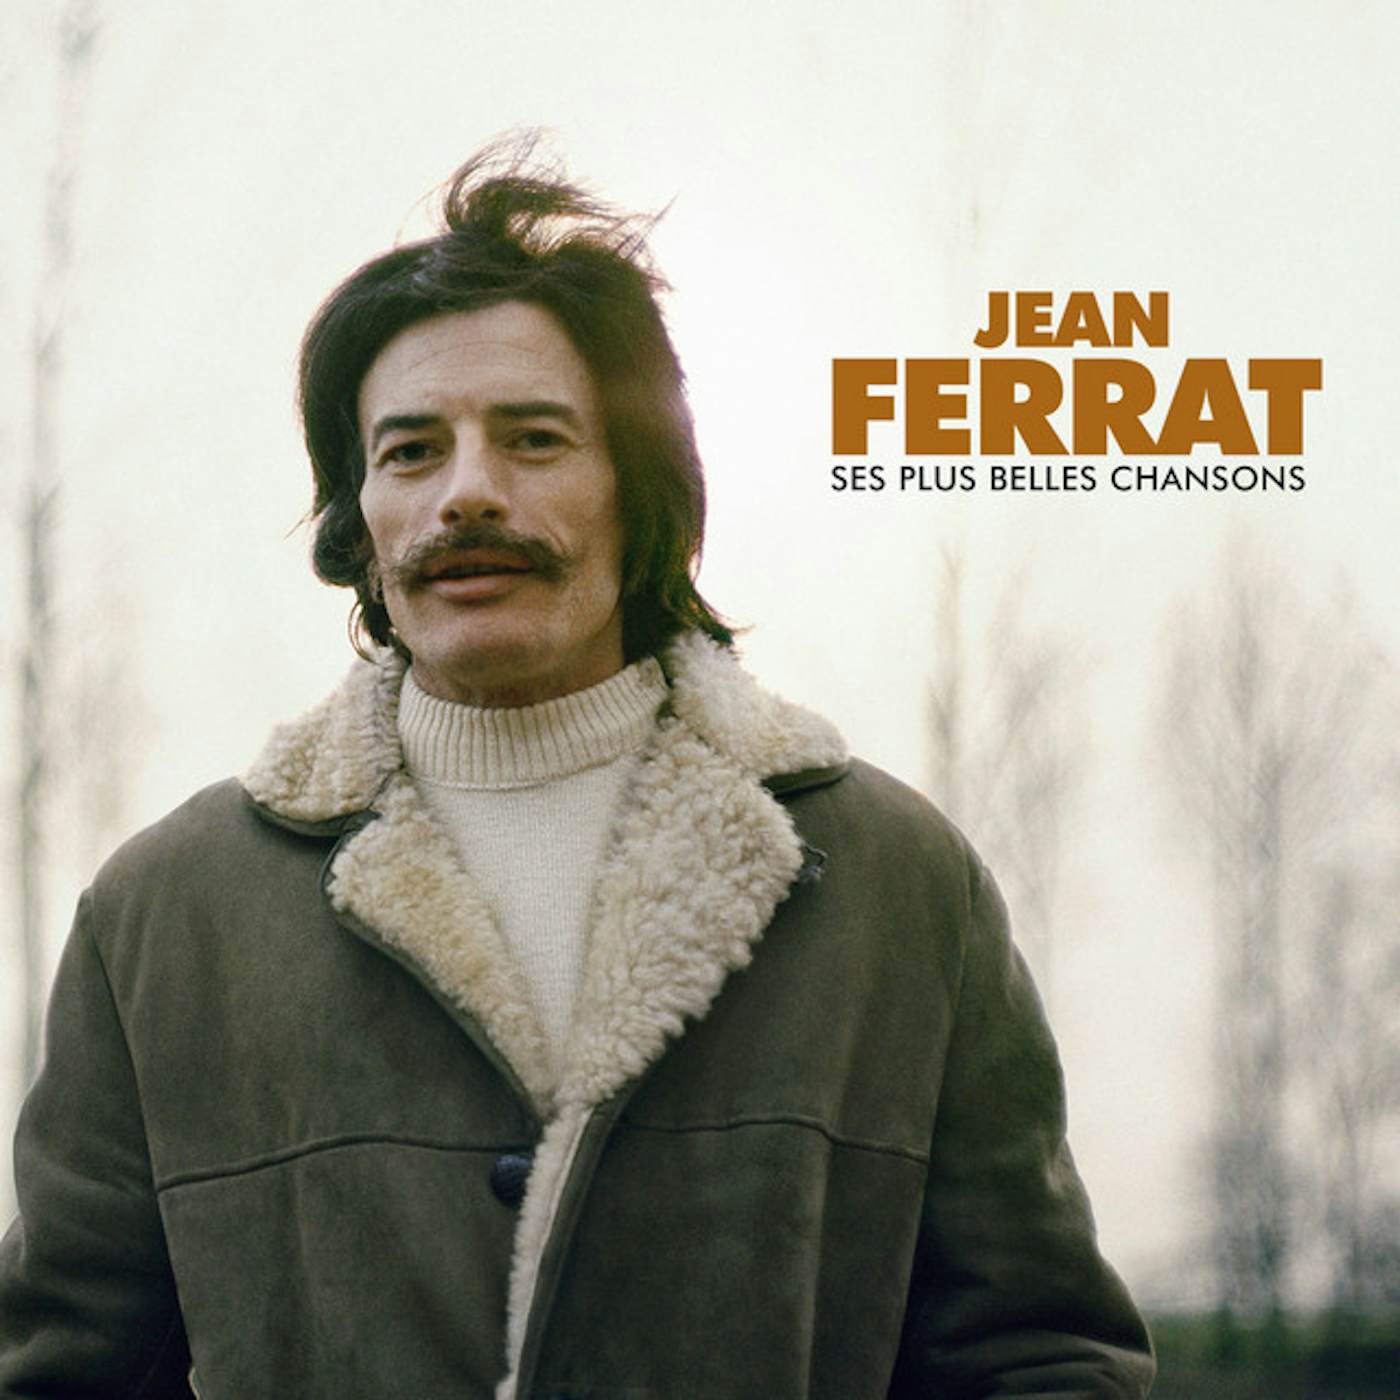 Jean Ferrat SES PLUS BELLES CHANSONS CD